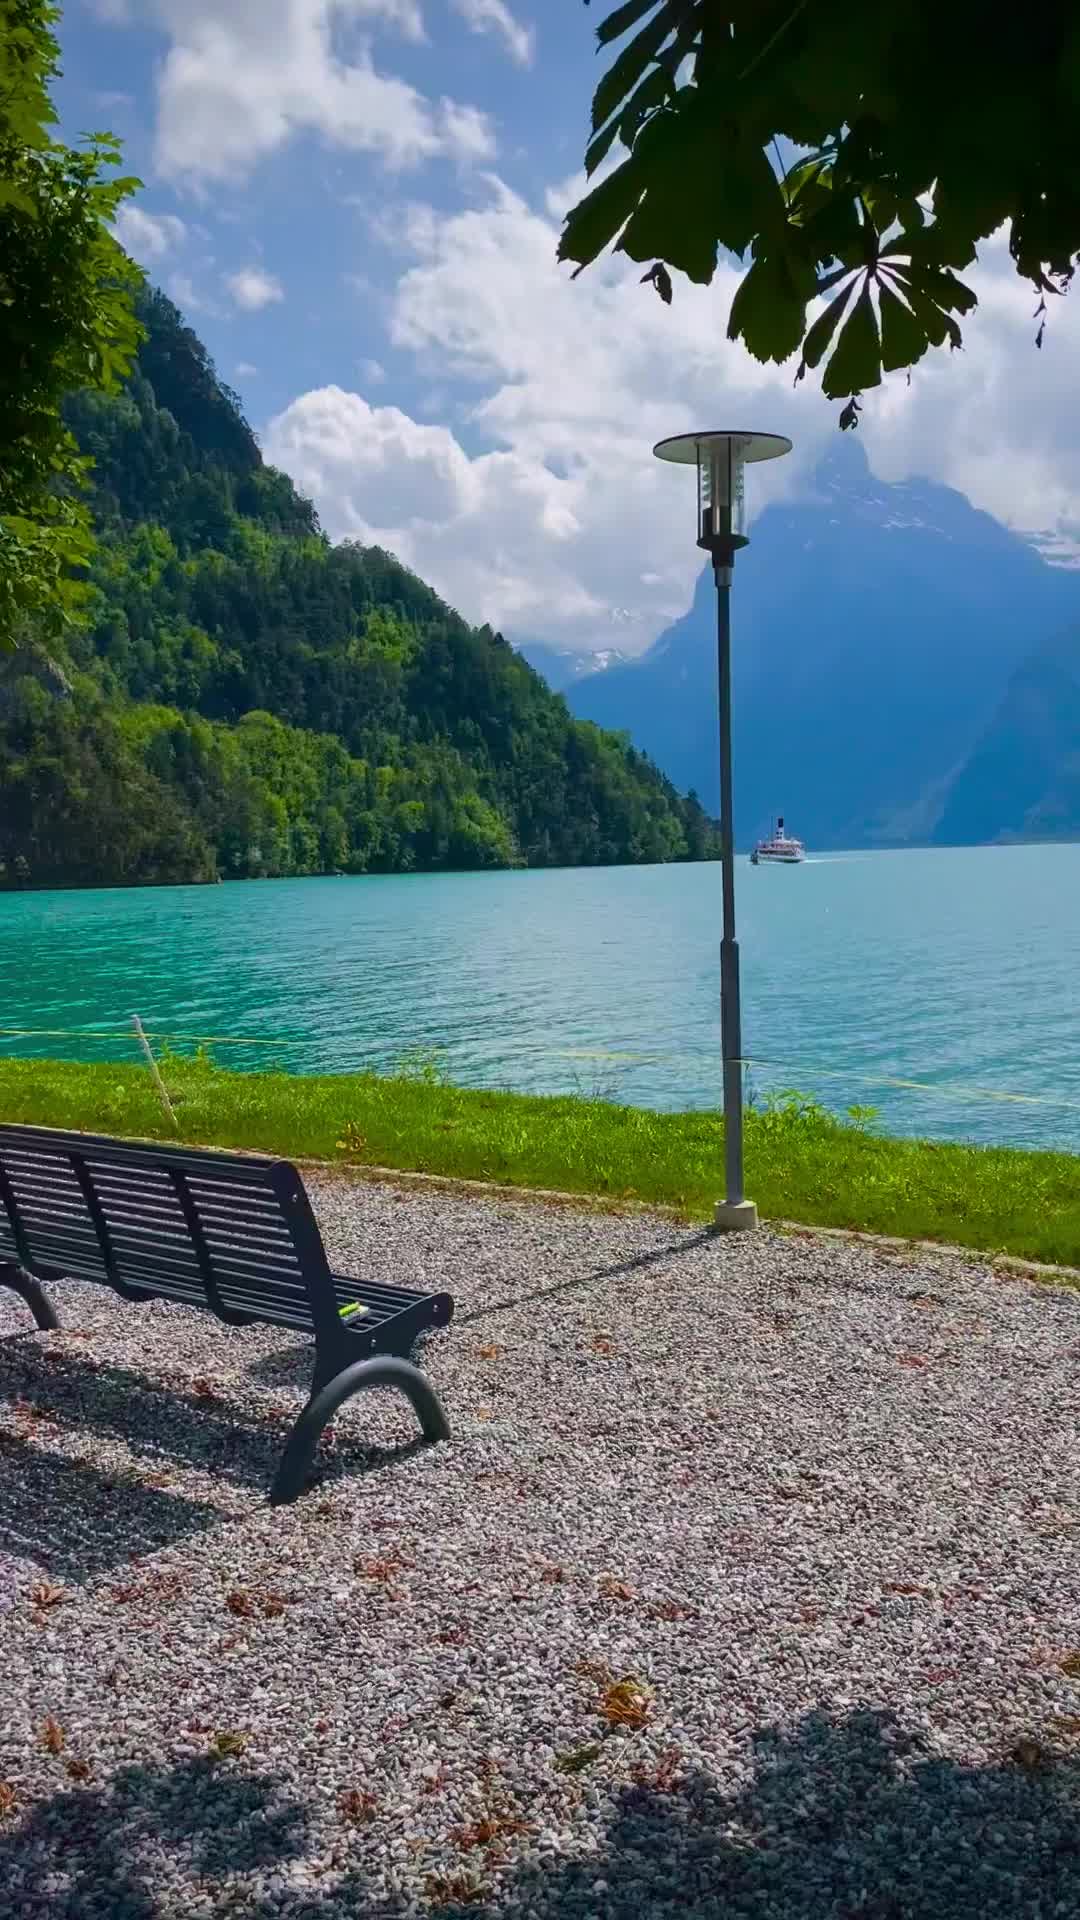 Scenic Boat Rides in Switzerland’s Vierwaldstättersee